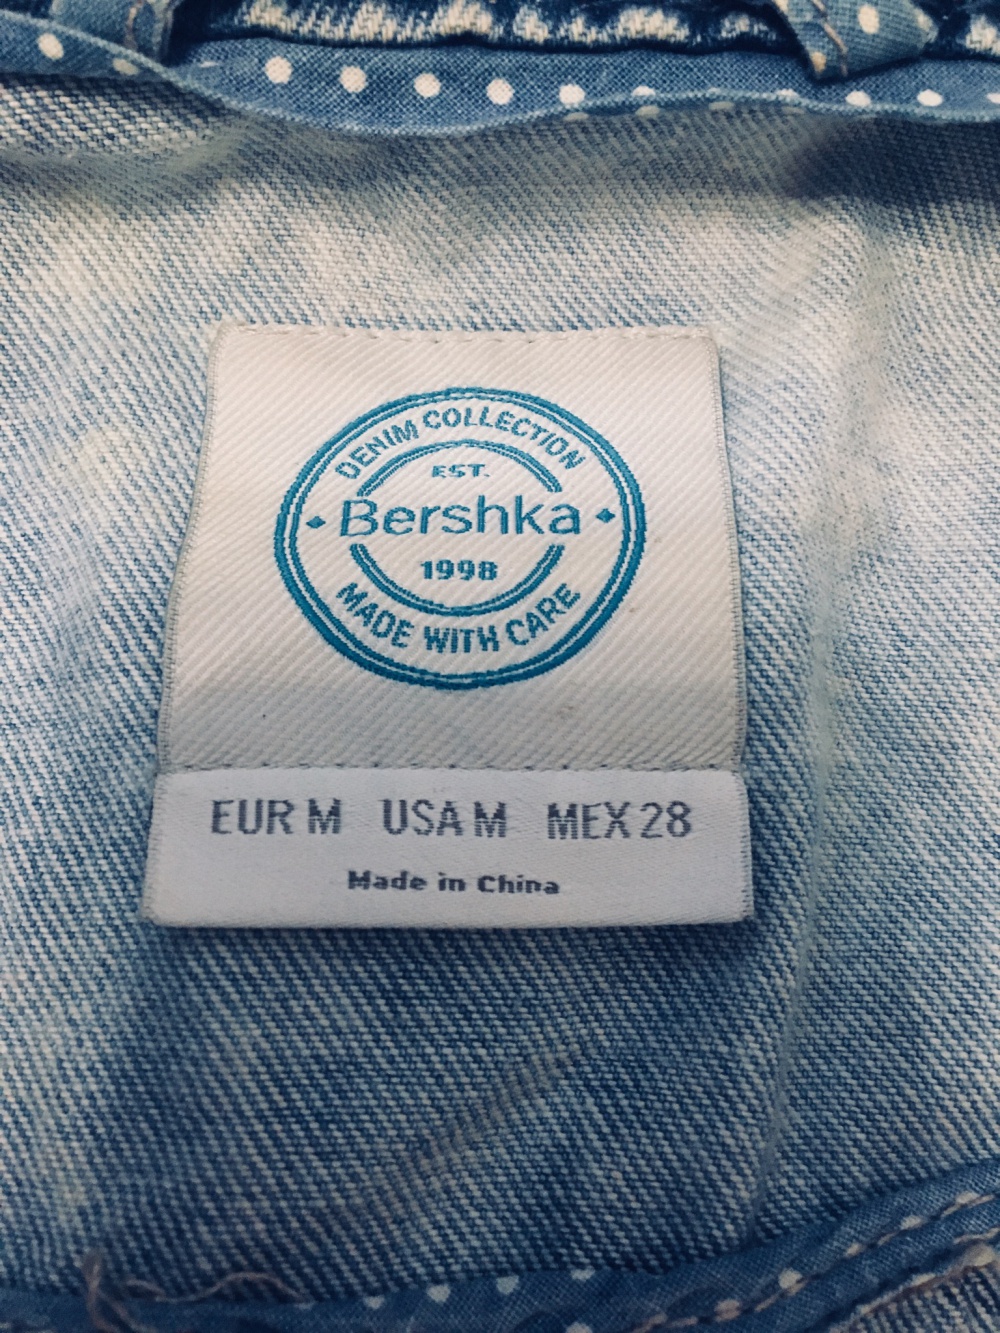 Джинсовая жилетка с вышивкой bershka, размер S-M.